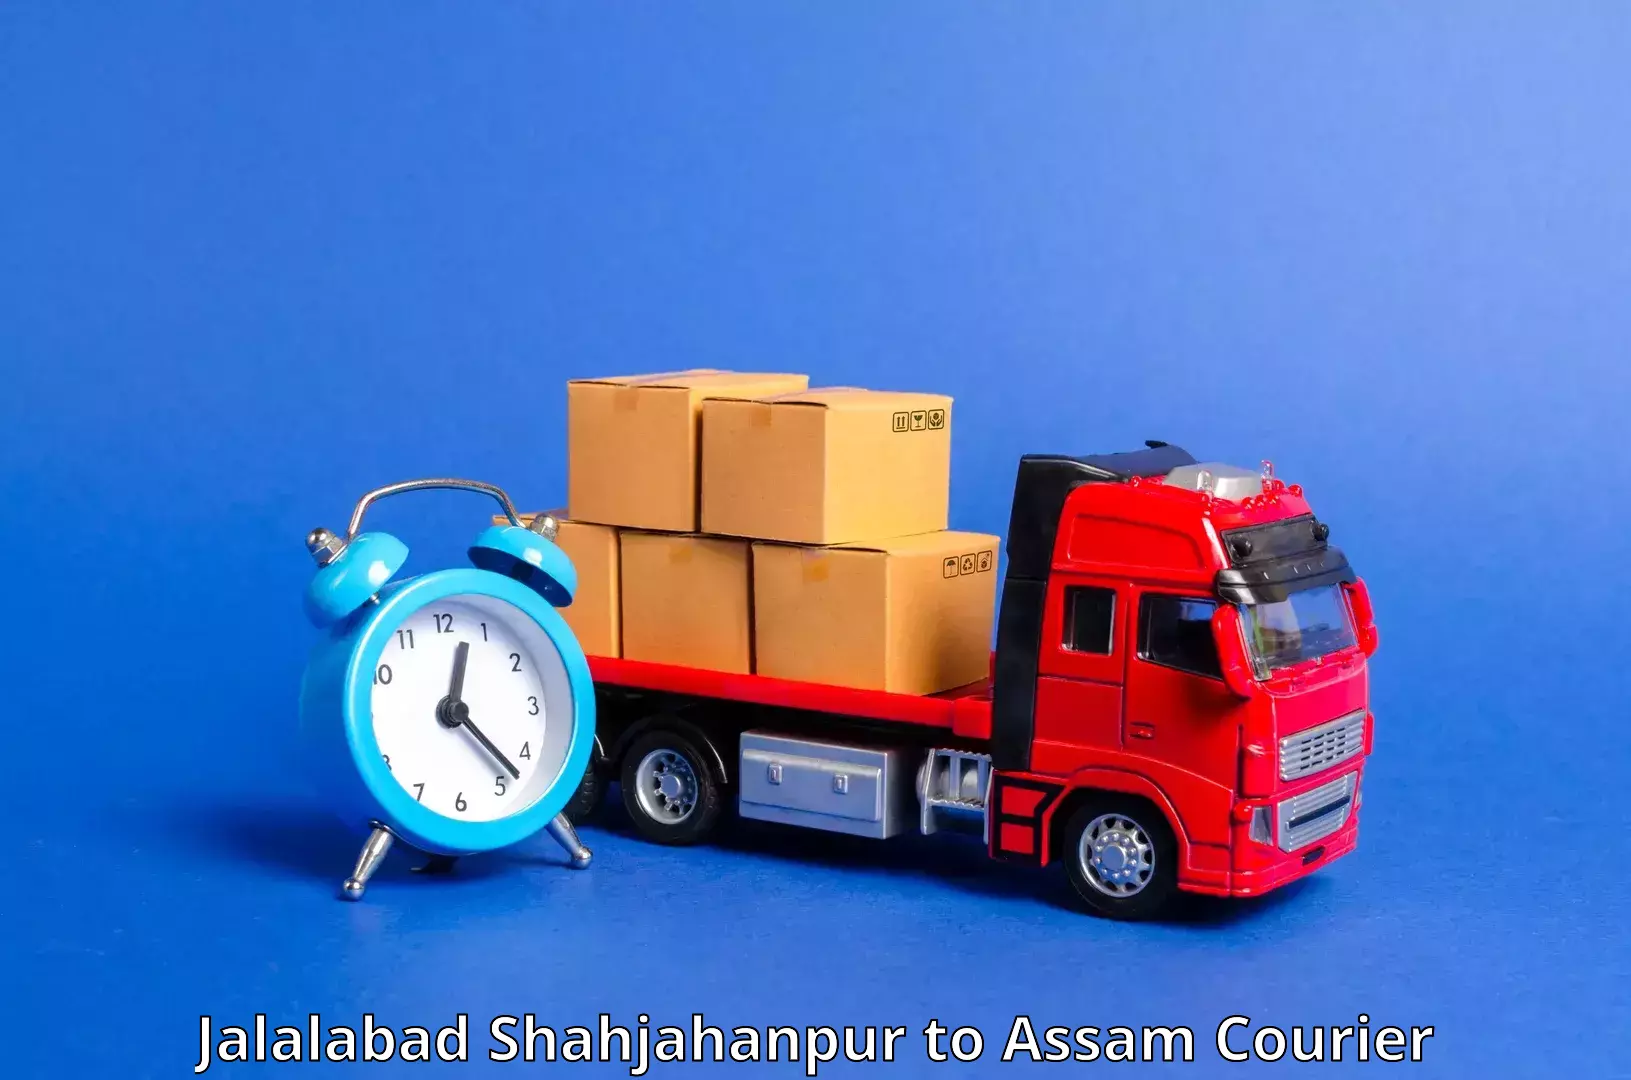 Urgent courier needs Jalalabad Shahjahanpur to Kalgachia